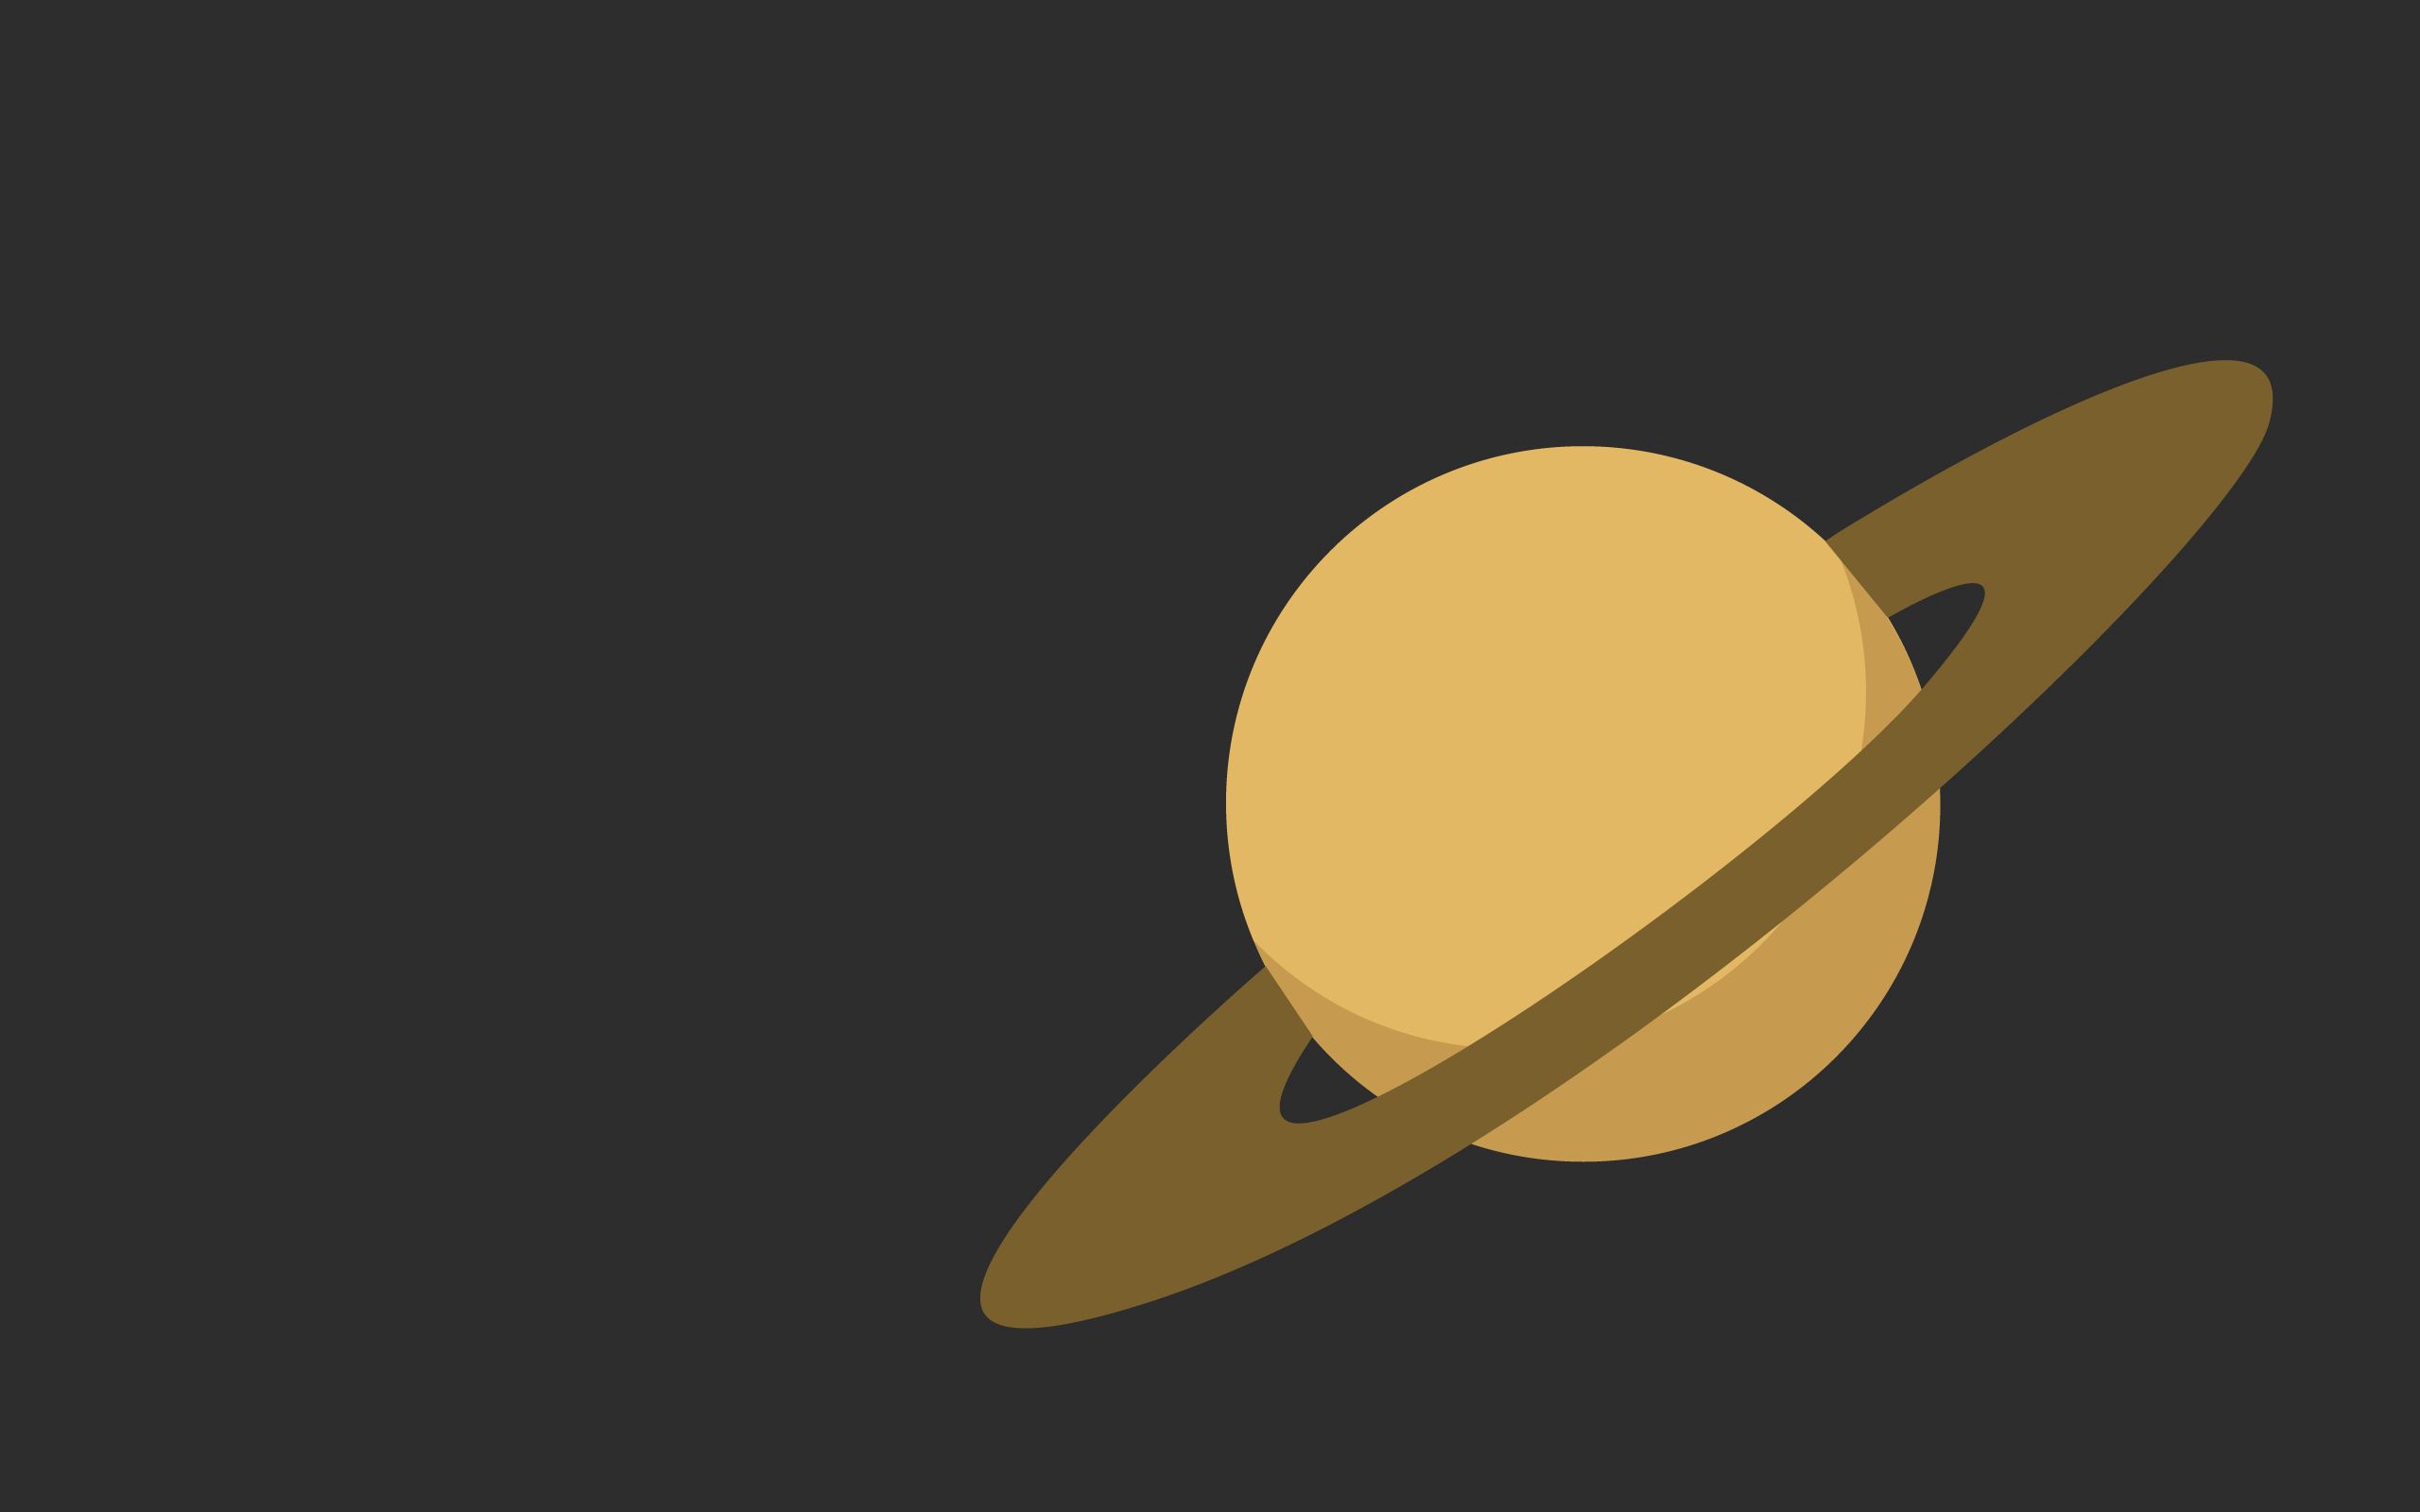 Скачать обои бесплатно Кольцо, Планета, Сатурн, Вектор картинка на рабочий стол ПК